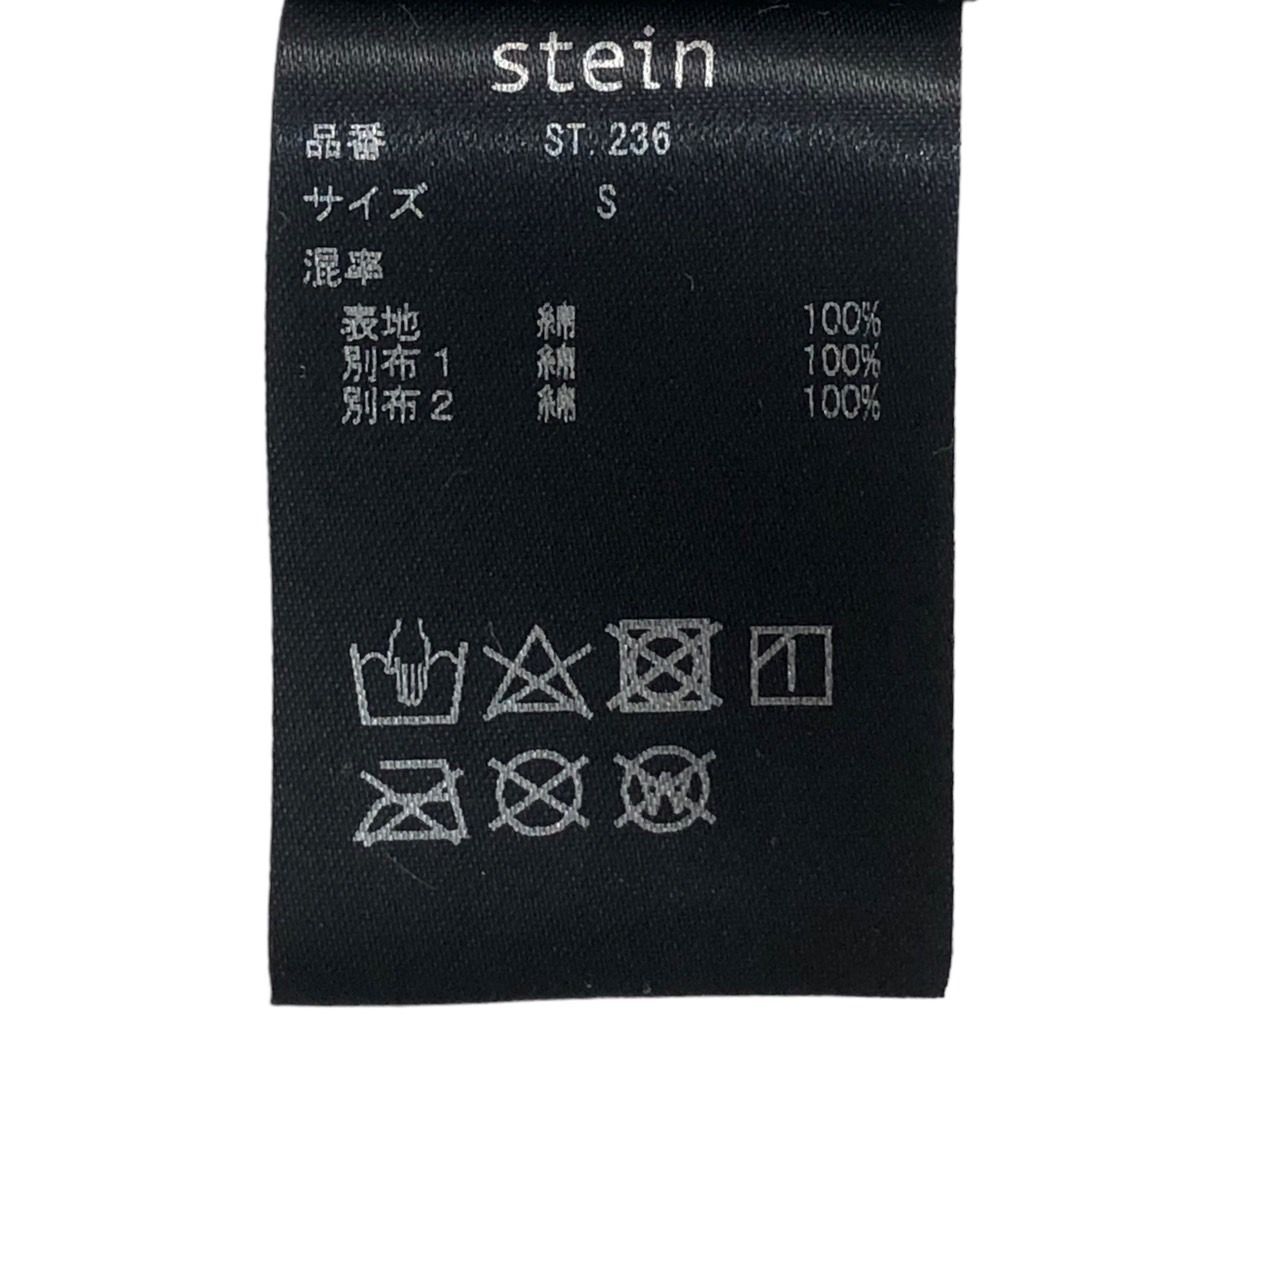 stein(シュタイン) OVERSIZED 4LAYERED SHIRT/オーバーサイズ4レイヤードシャツ ST.236 S ホワイト×ベージュ/ストライプ  - メルカリ